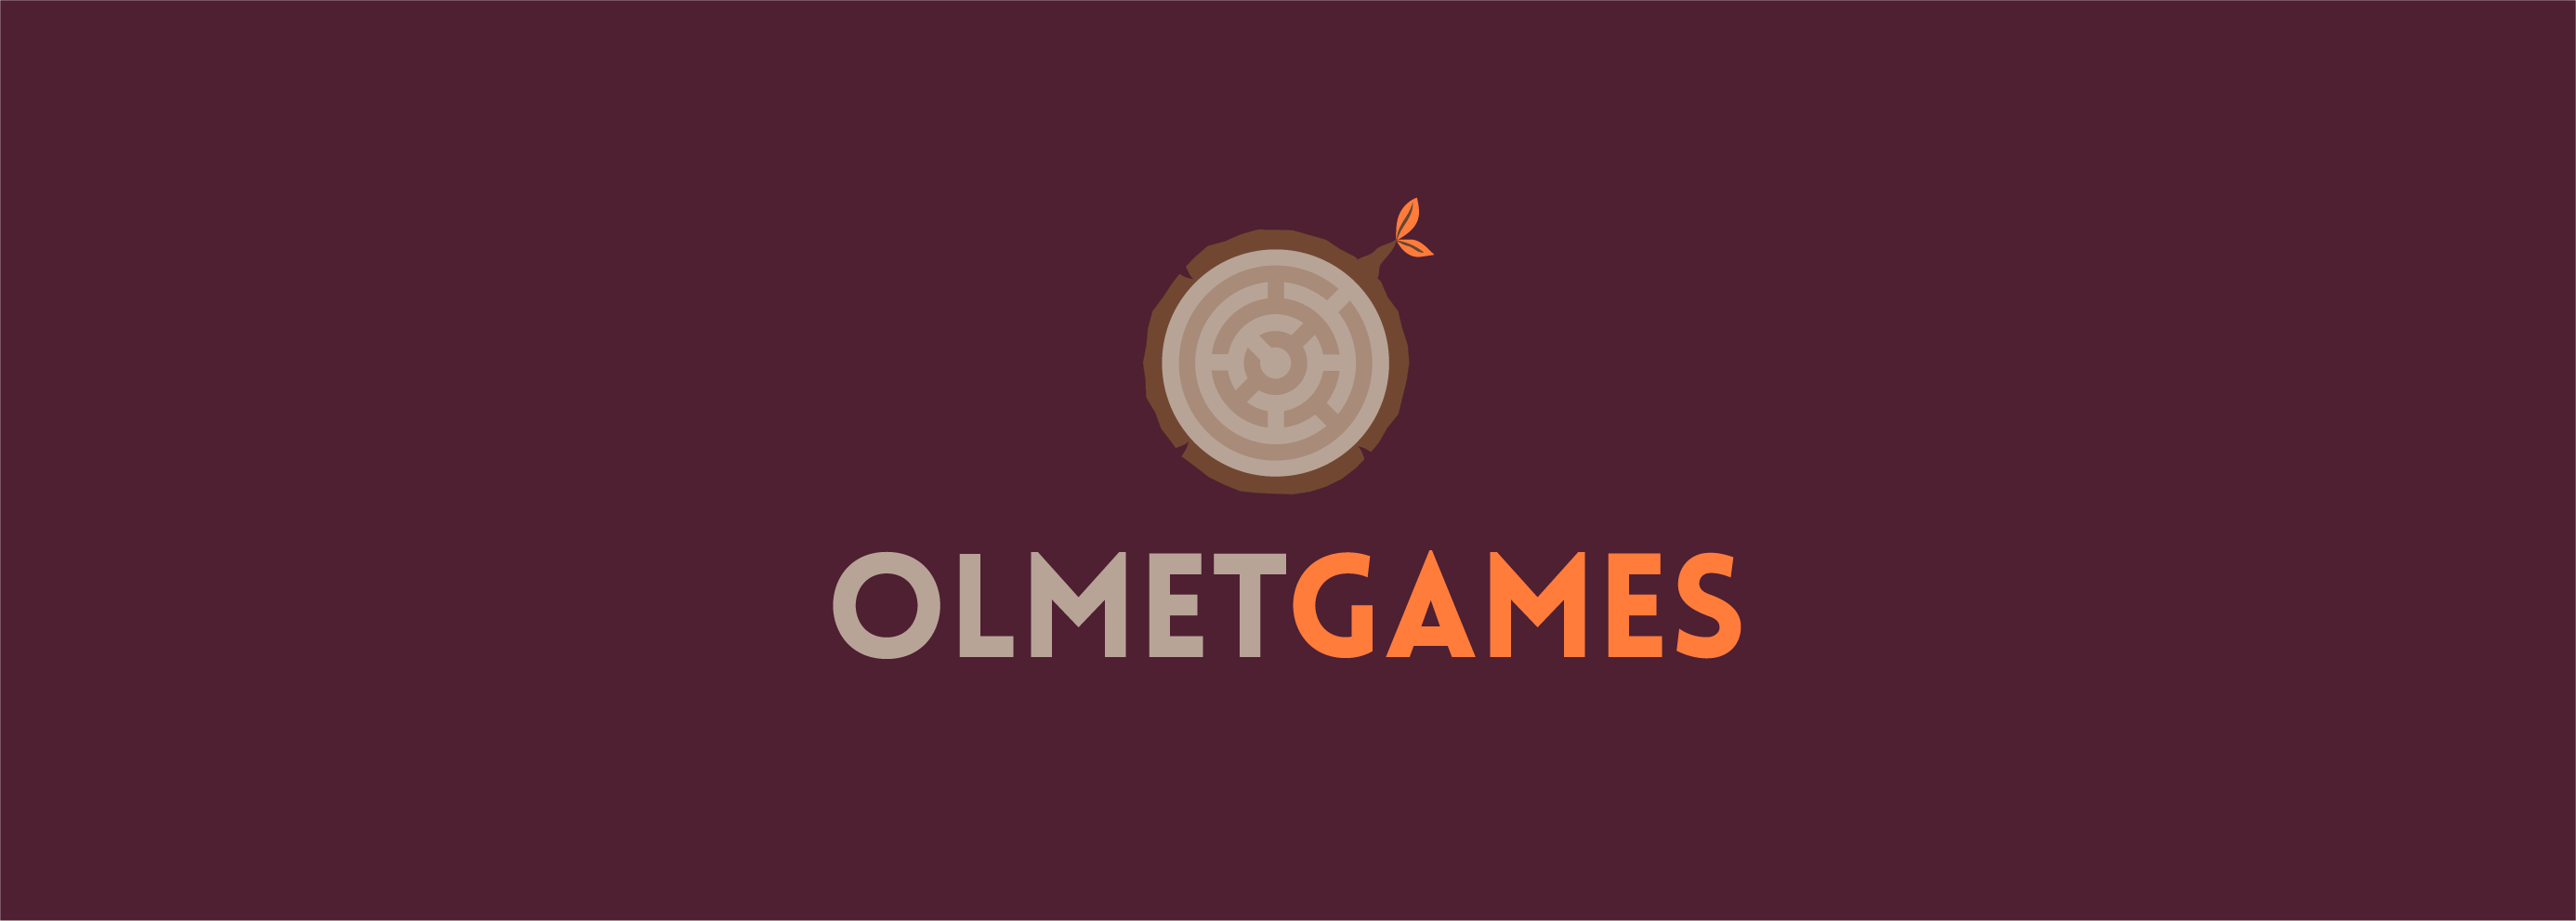 Nace Olmet Games: marca matriz de The Darkest Room y otros escape room online